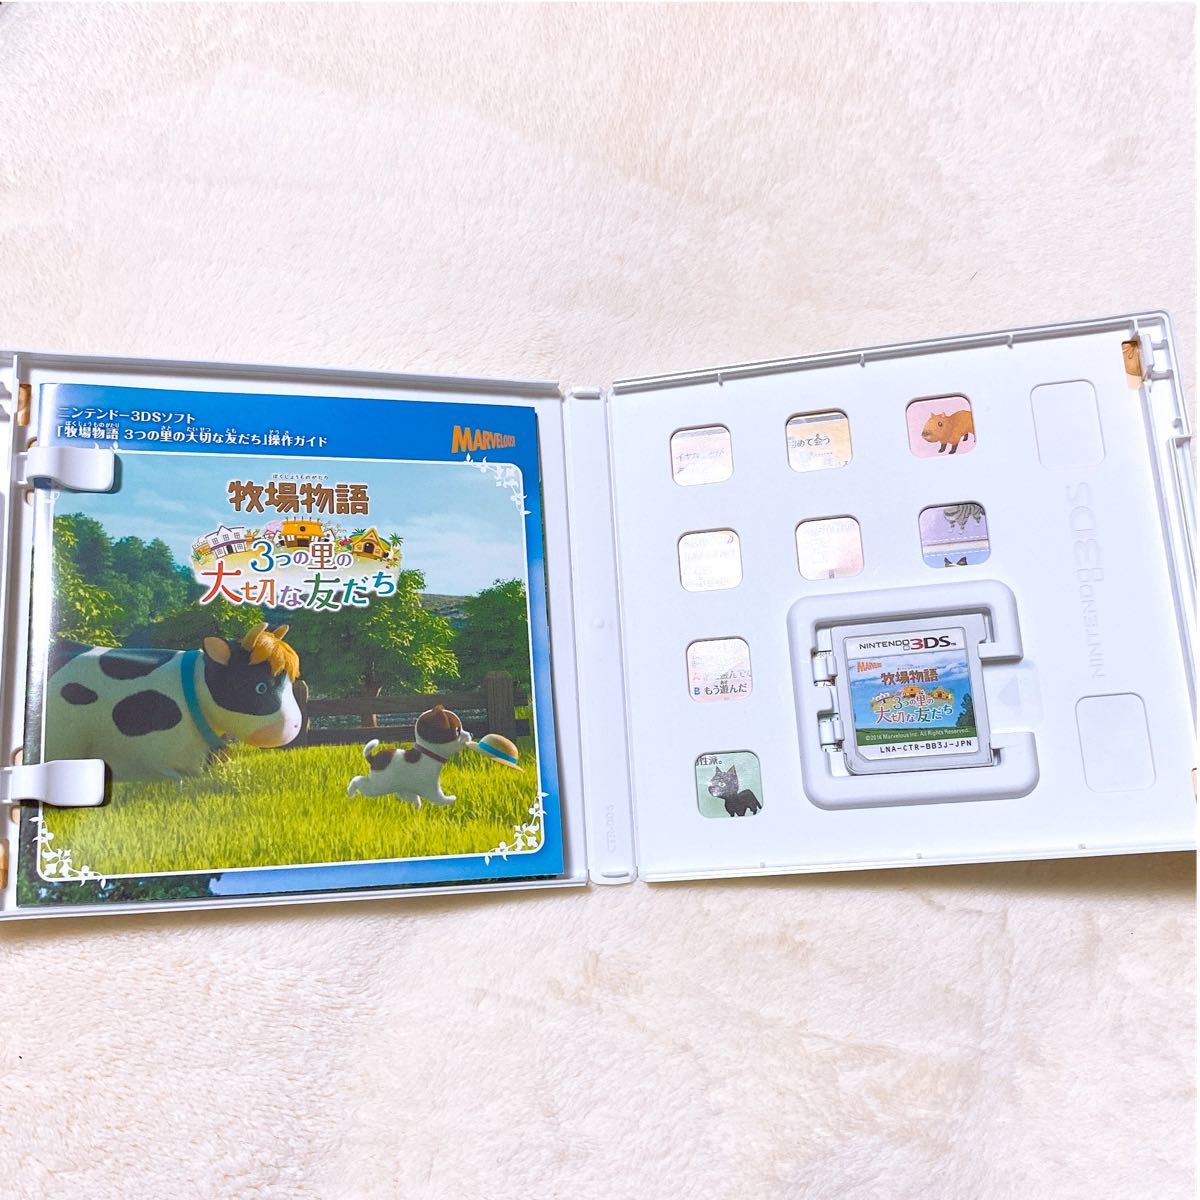 Nintendo  3DS 2DS ソフト 牧場物語 3つの里の大切な友だち ぼくもの 攻略本 3つの里 マーベラス